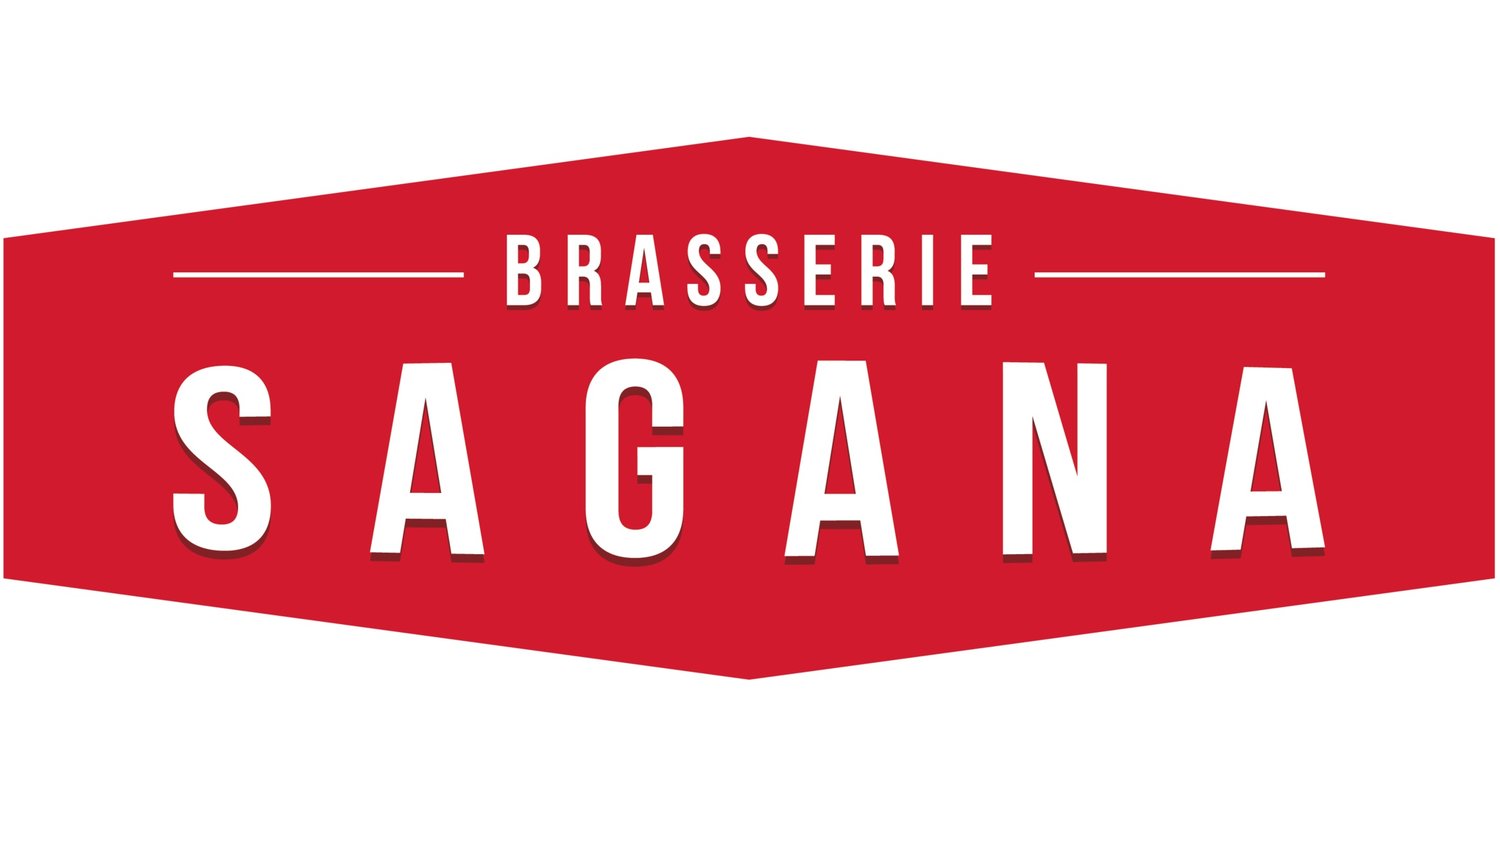 Brasserie Sagana